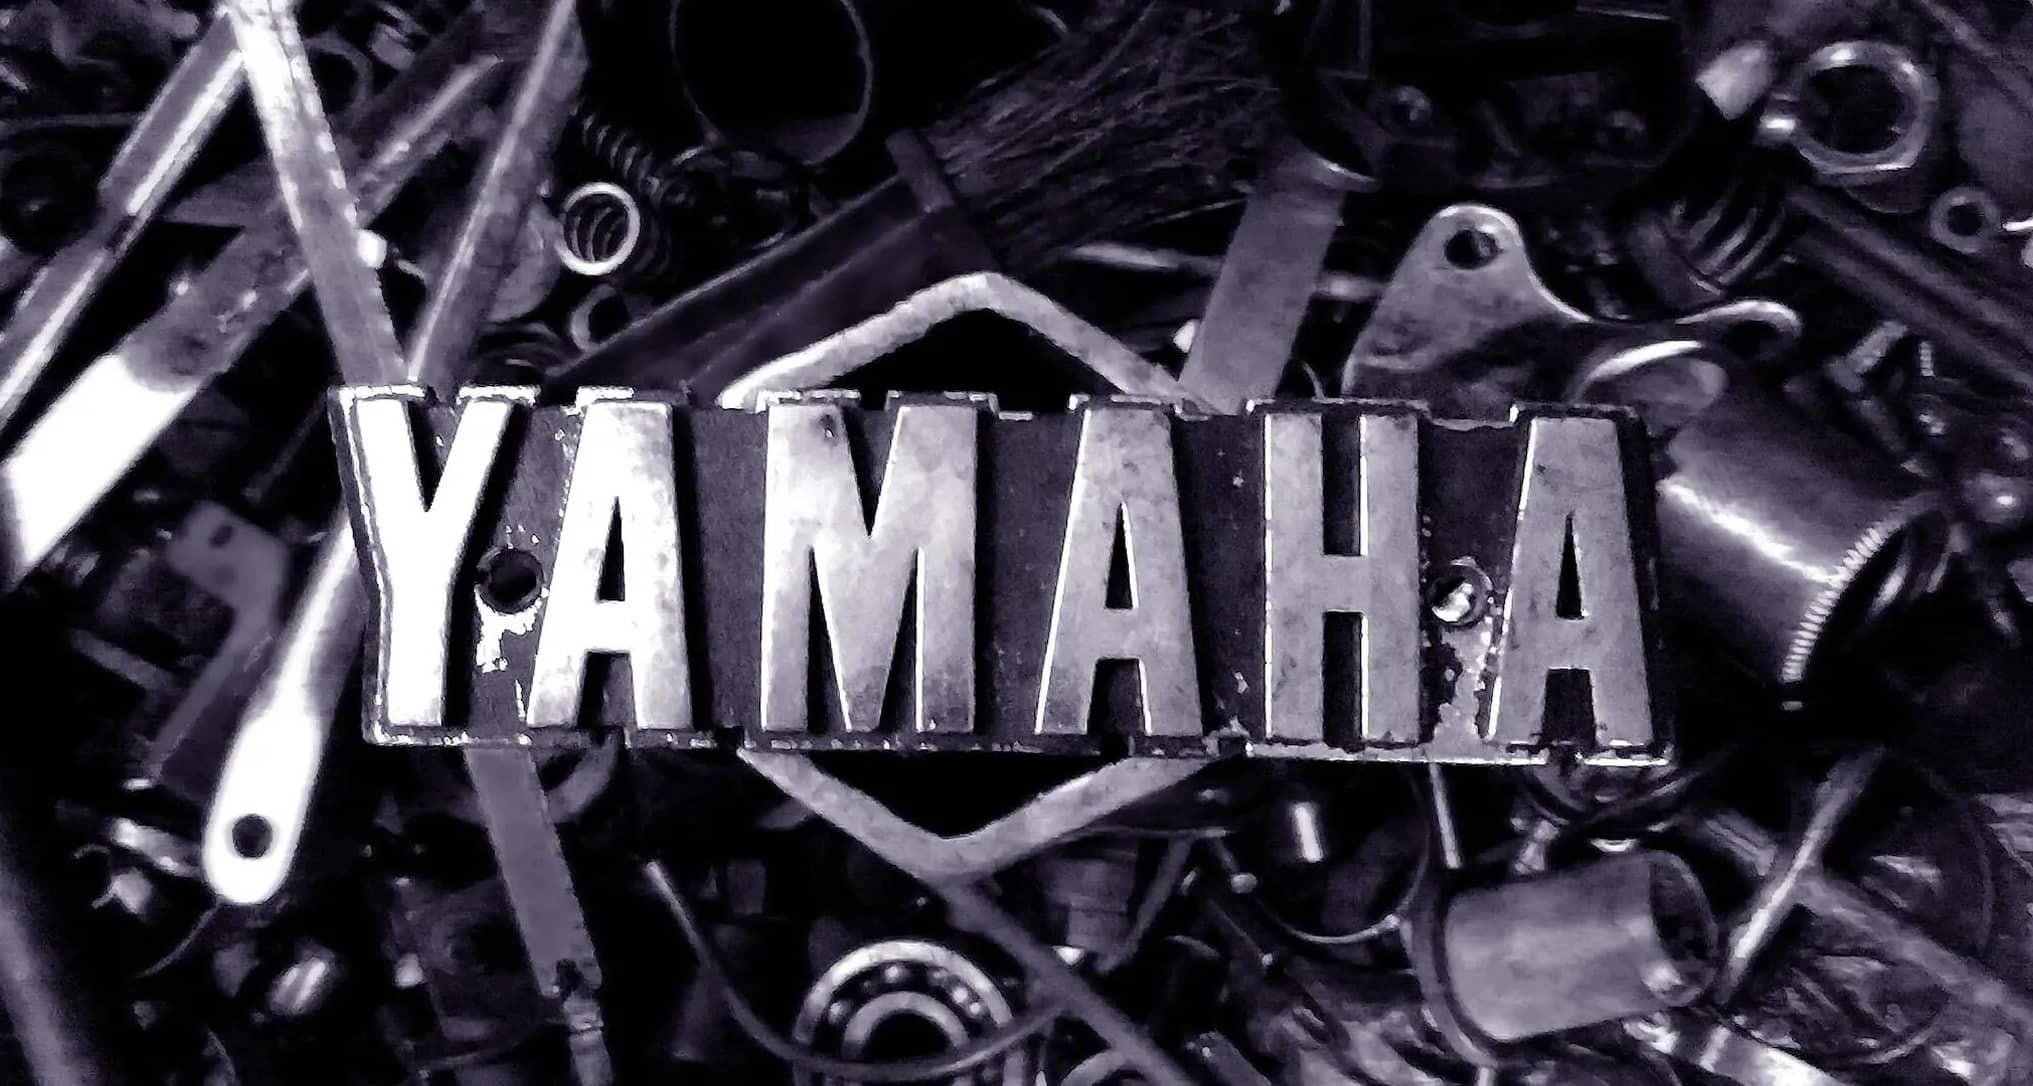 Yamaha Logo in metal